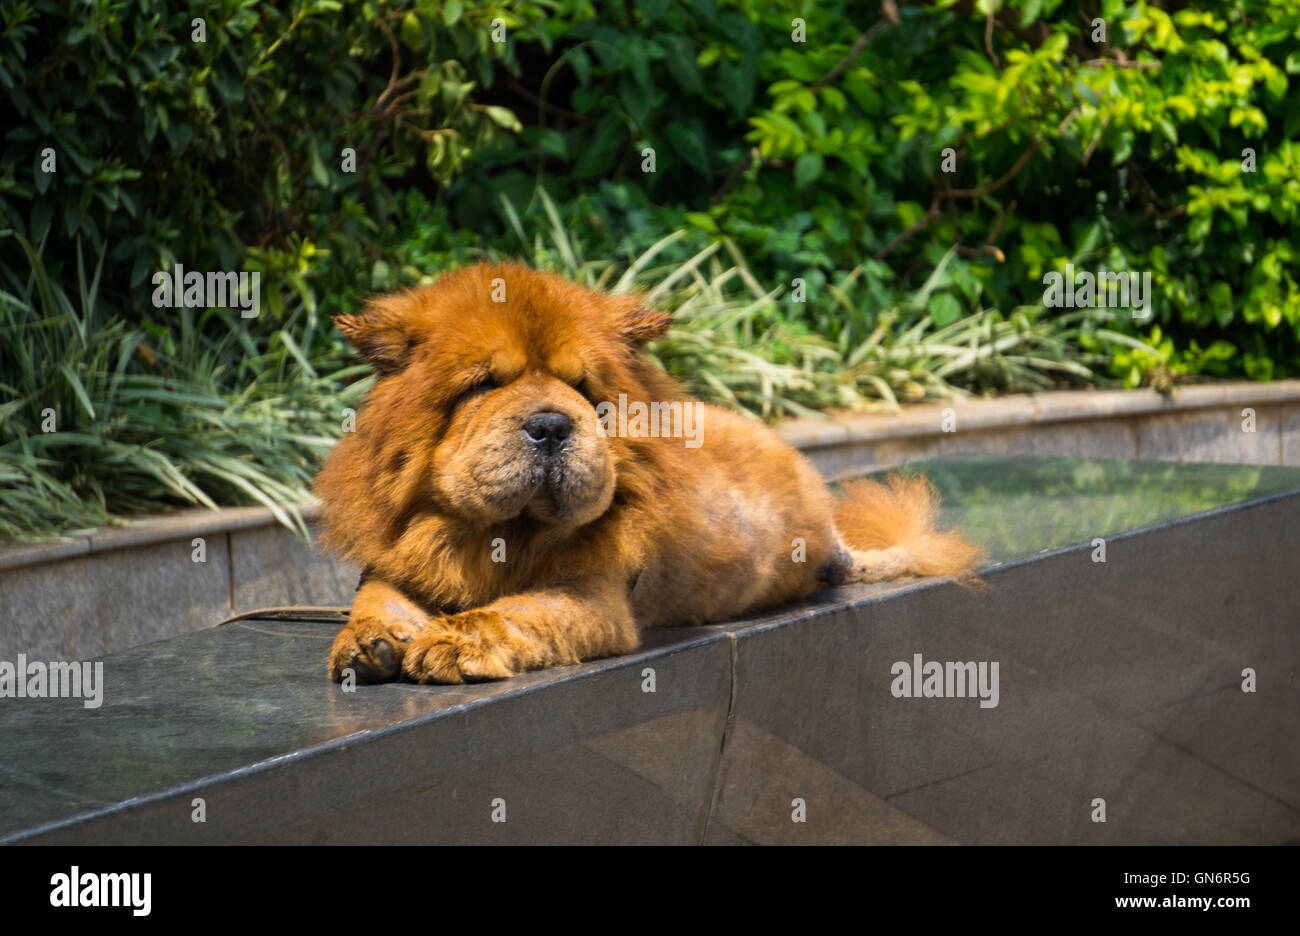 tibetan mastiff lion haircut